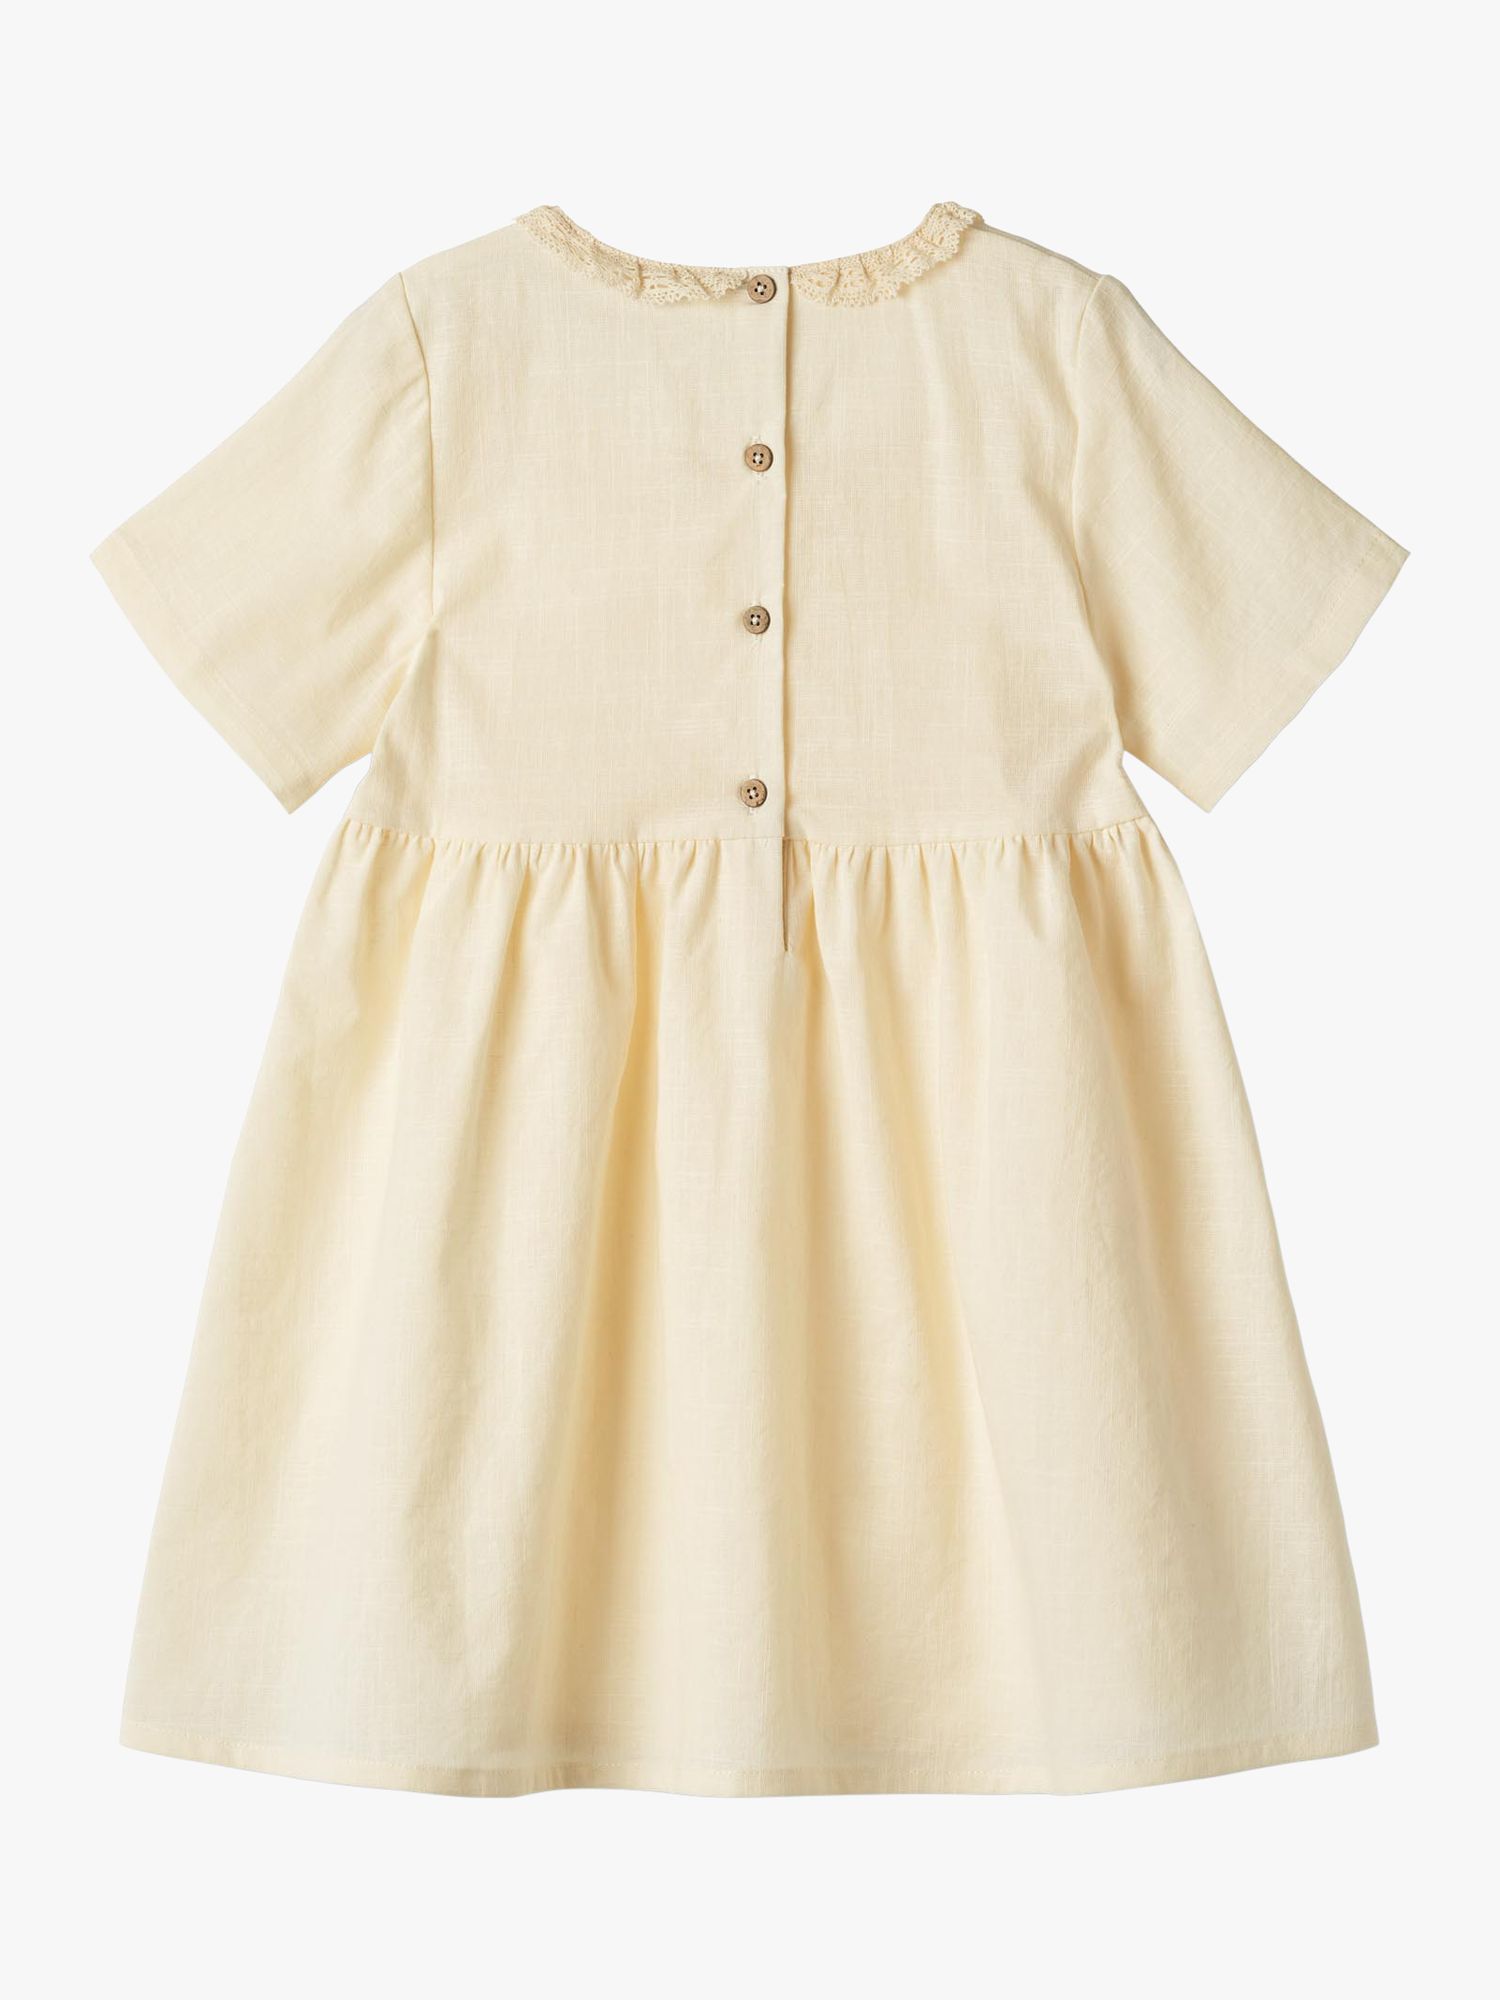 WHEAT Kids' Elma Organic Cotton Dress, Shell, 3 years